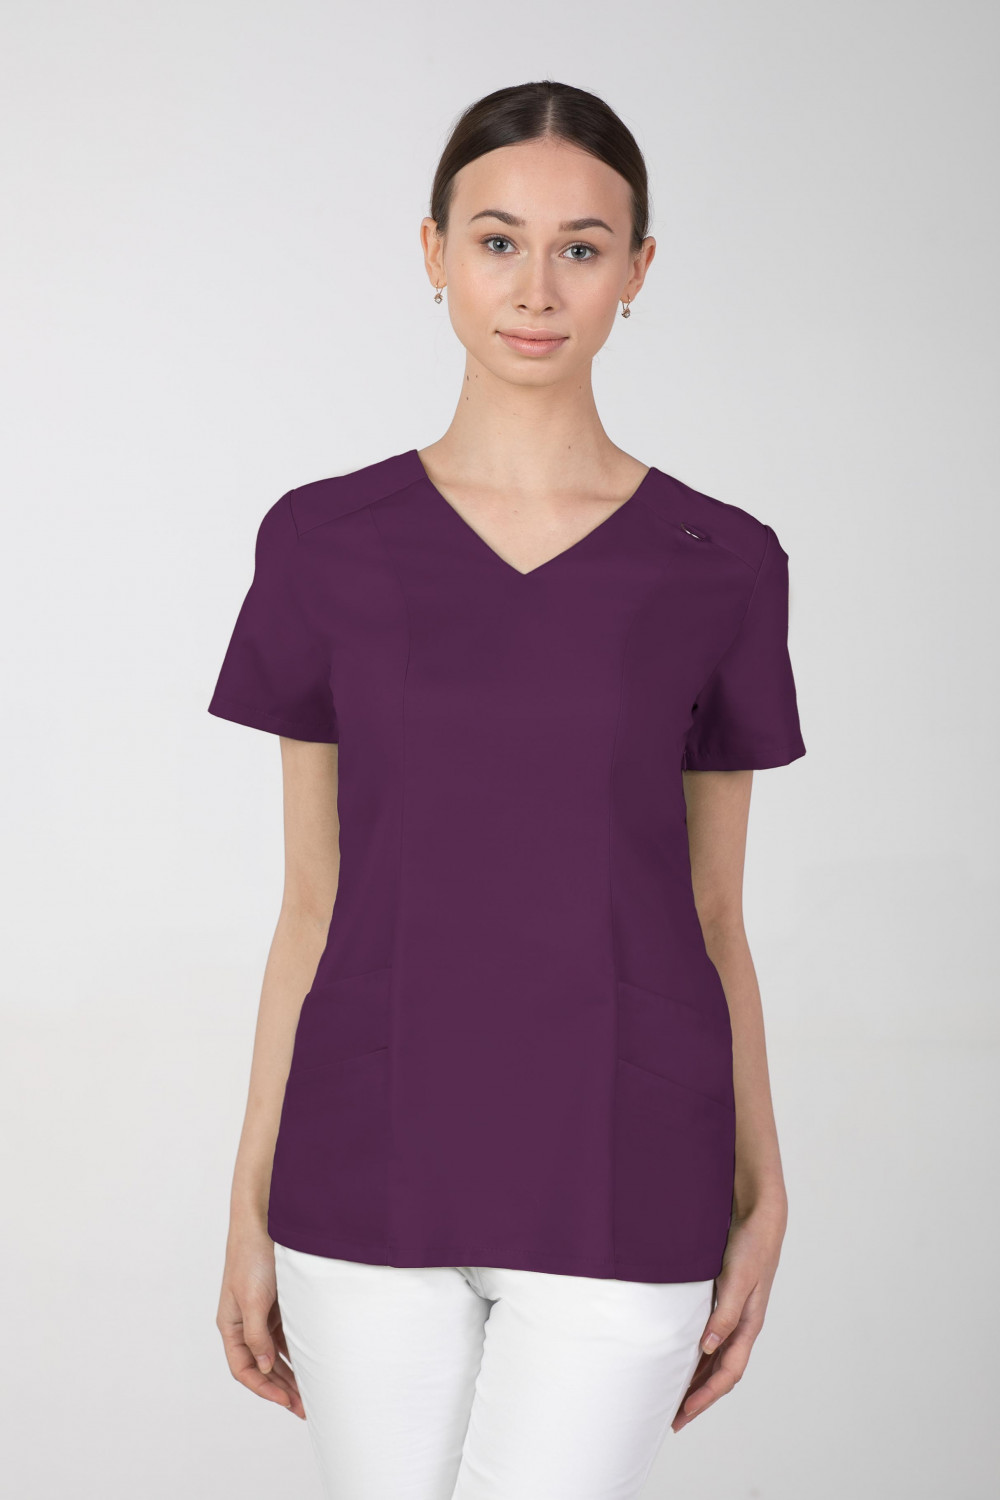 Bluza medyczna damska M-376A 26 kolorów. Śliwka